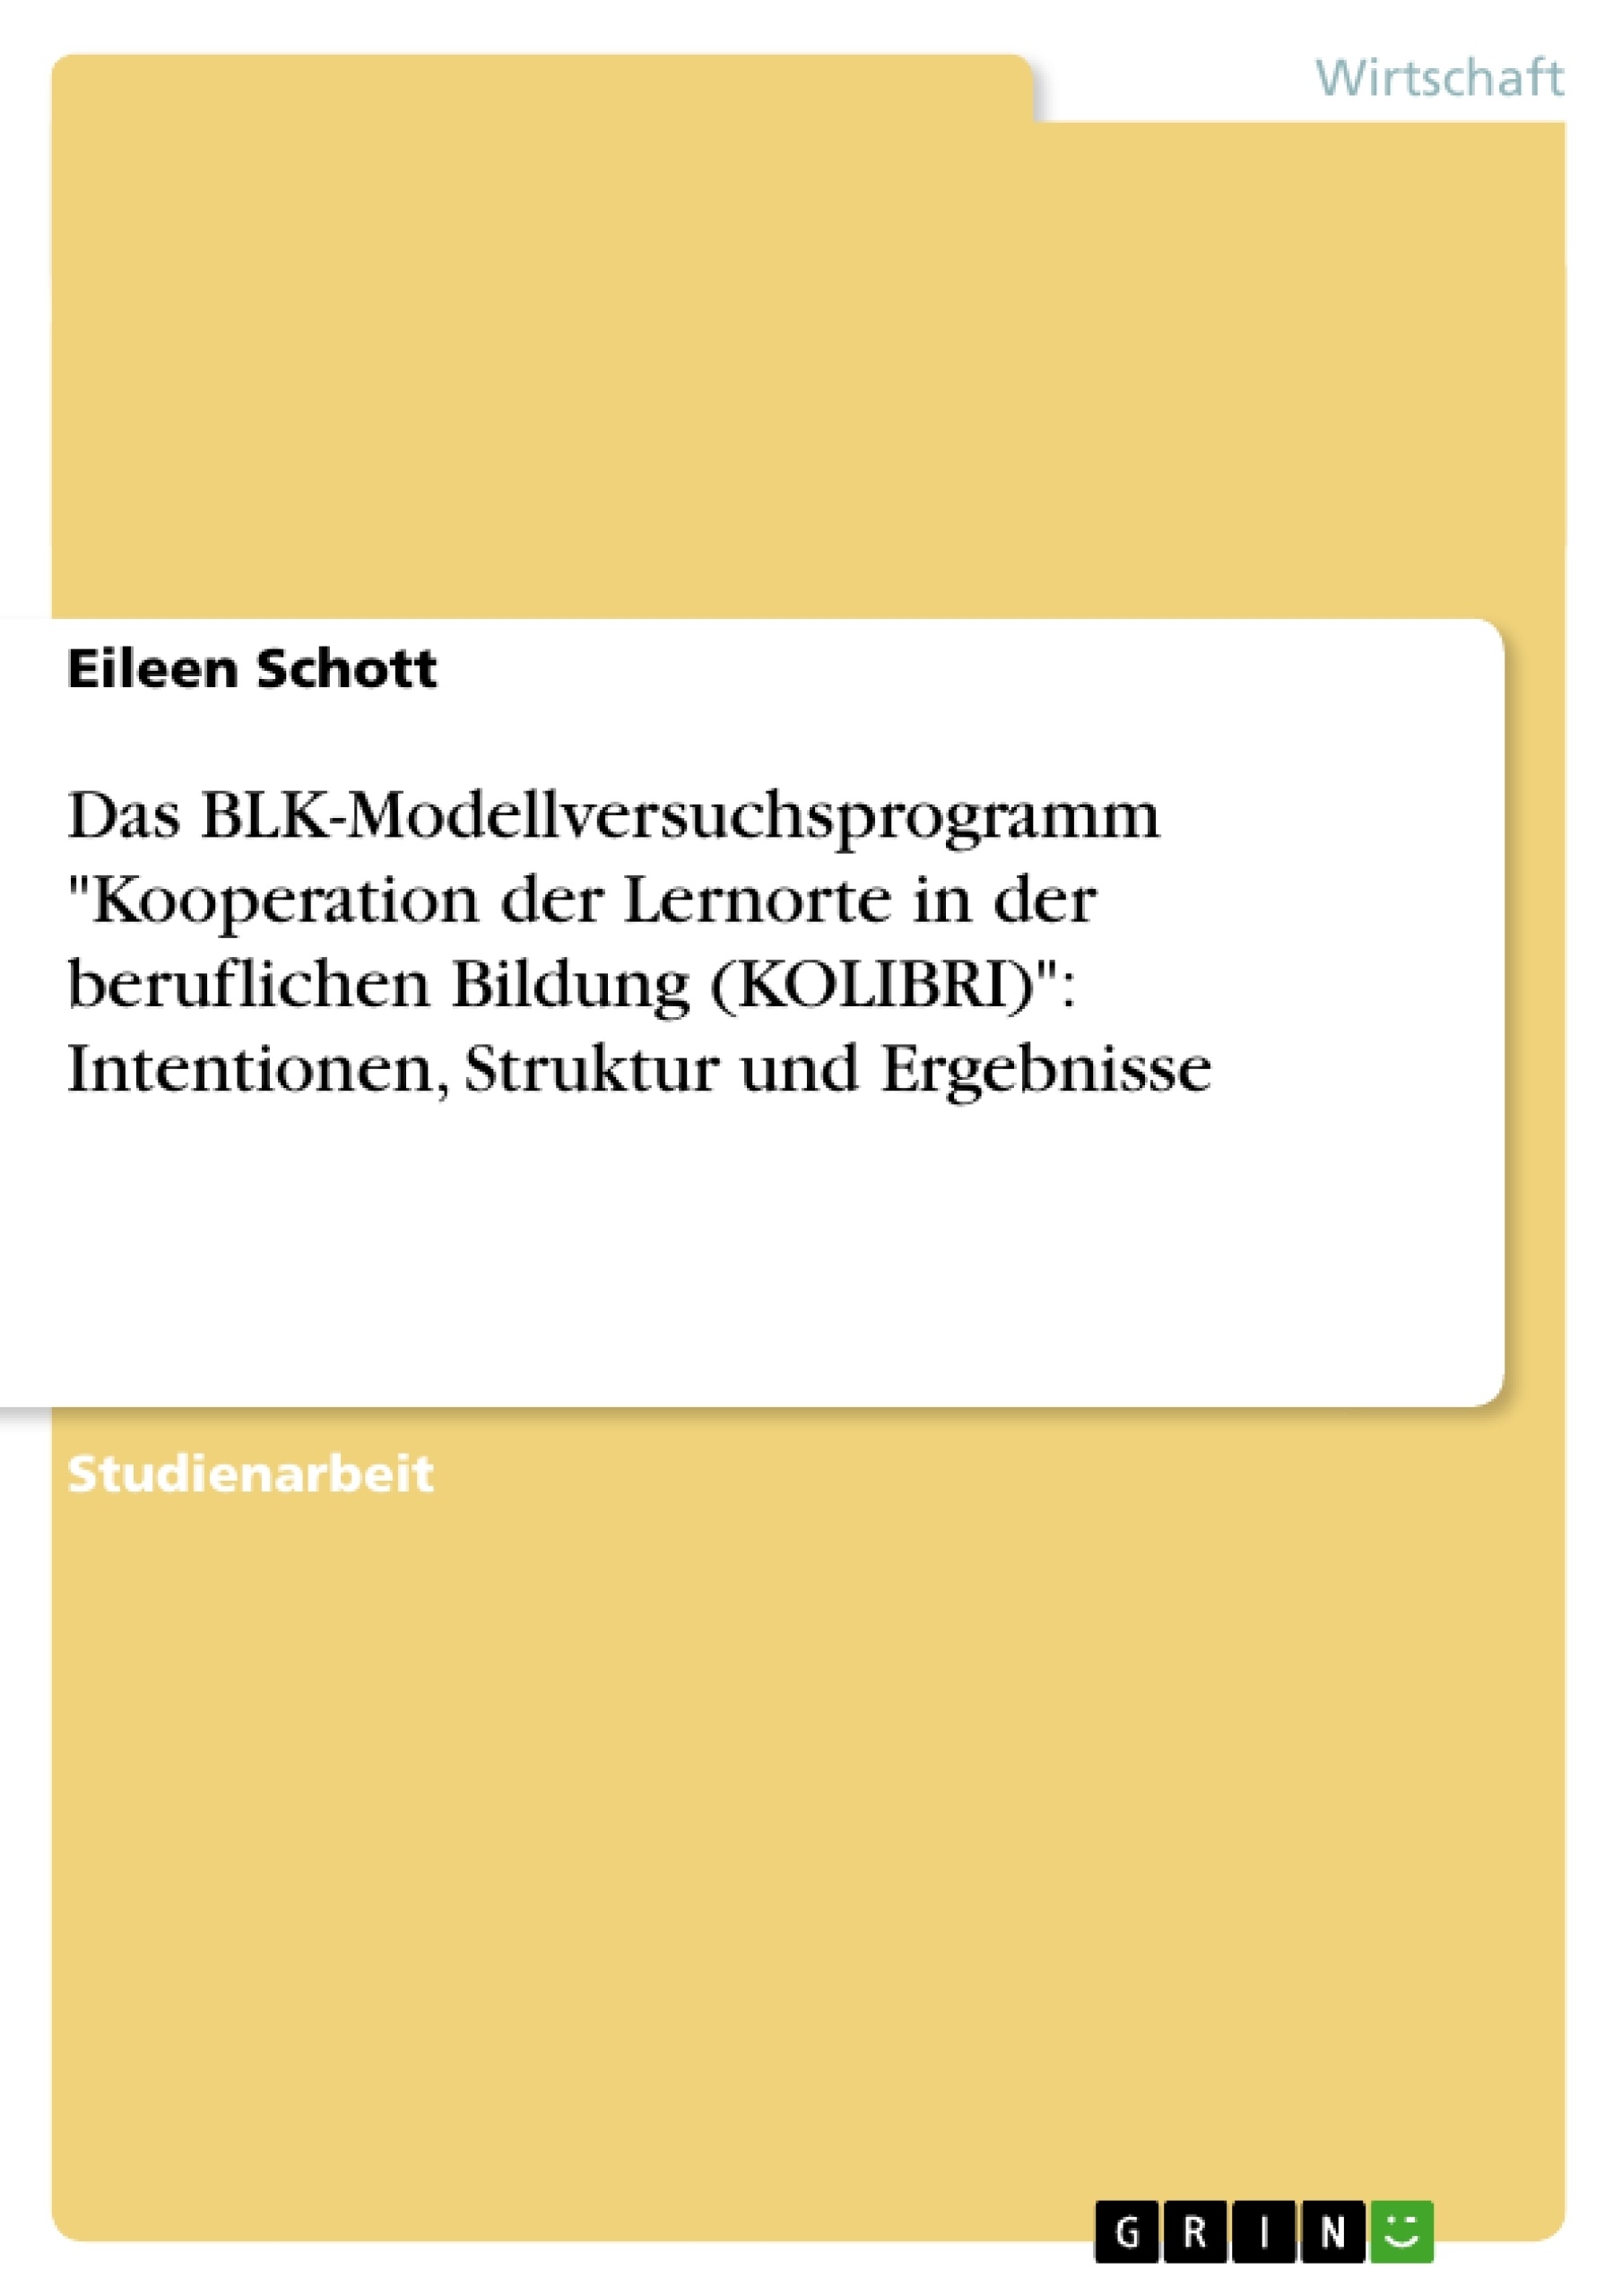 Título: Das BLK-Modellversuchsprogramm "Kooperation der Lernorte in der beruflichen Bildung (KOLIBRI)": Intentionen, Struktur und Ergebnisse